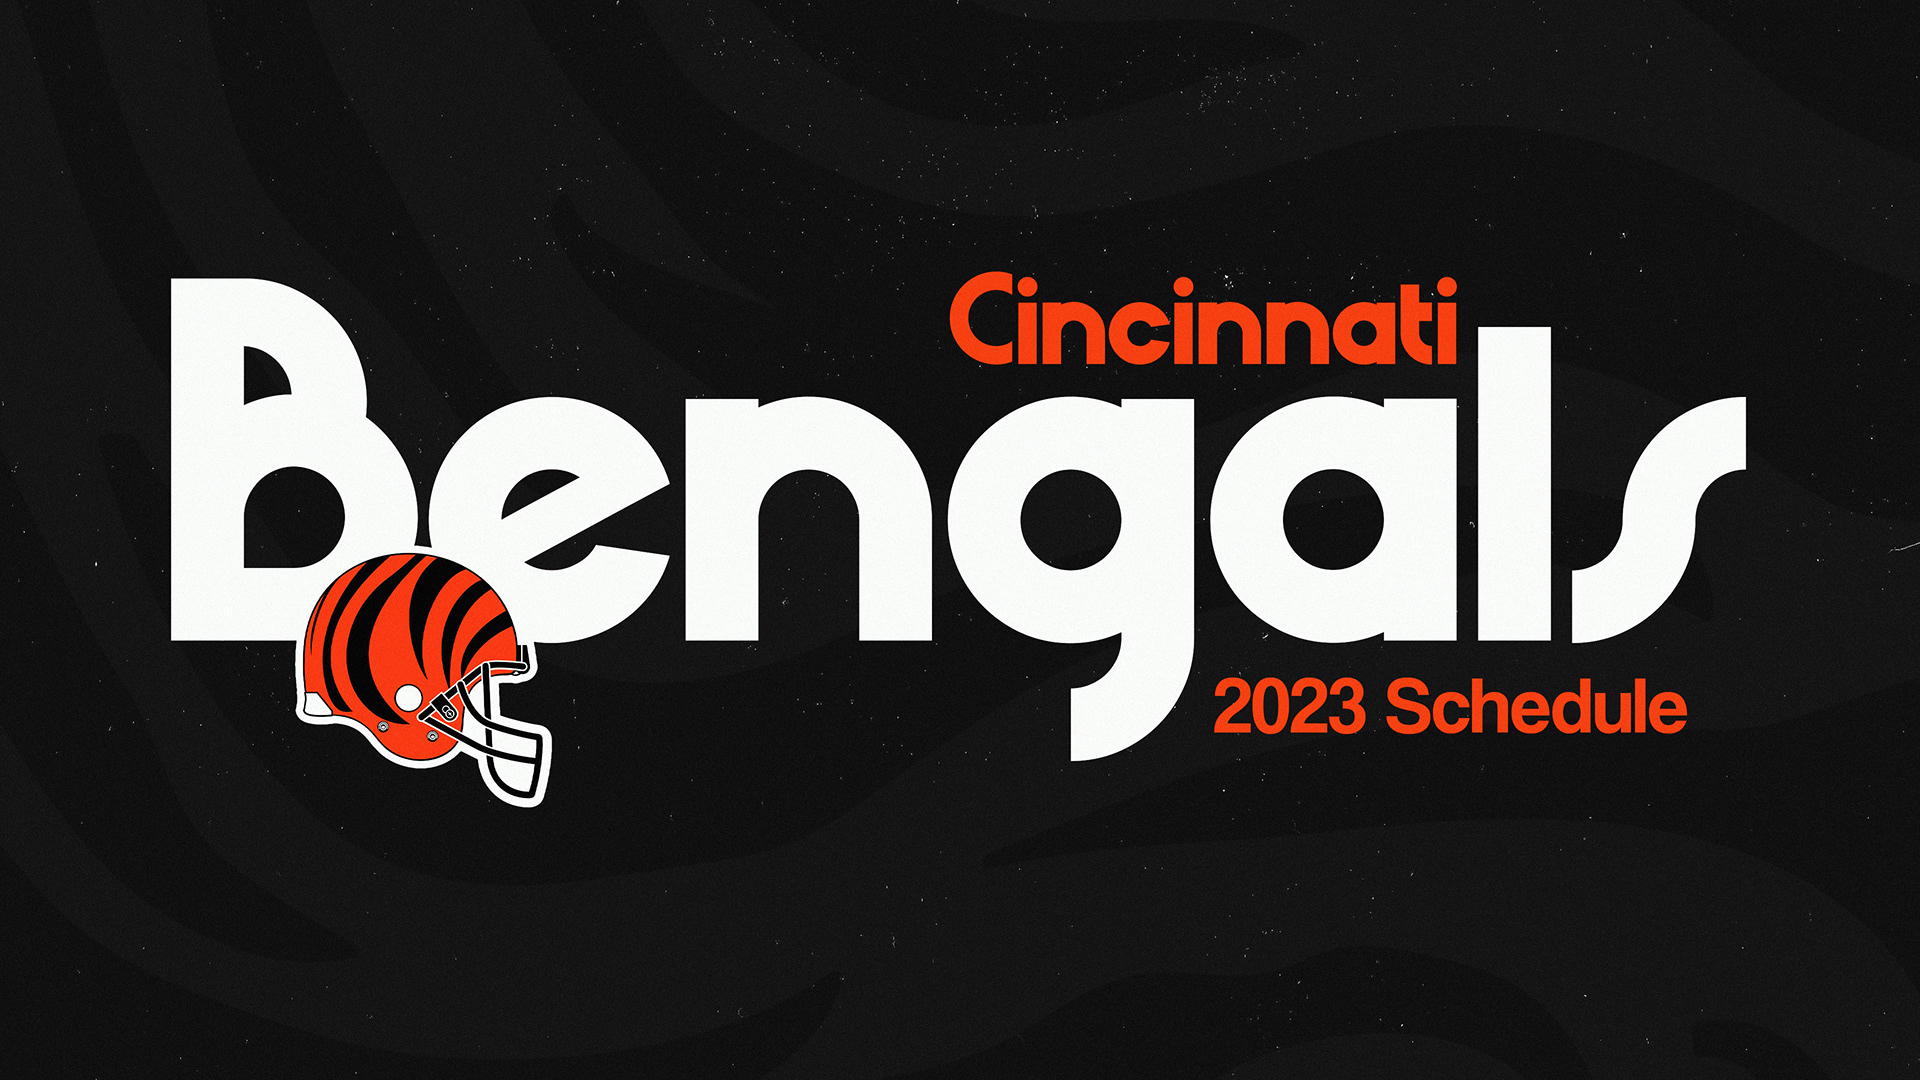 Cincinnati Bengals 2023/24 Schedule Wallpapers Behance